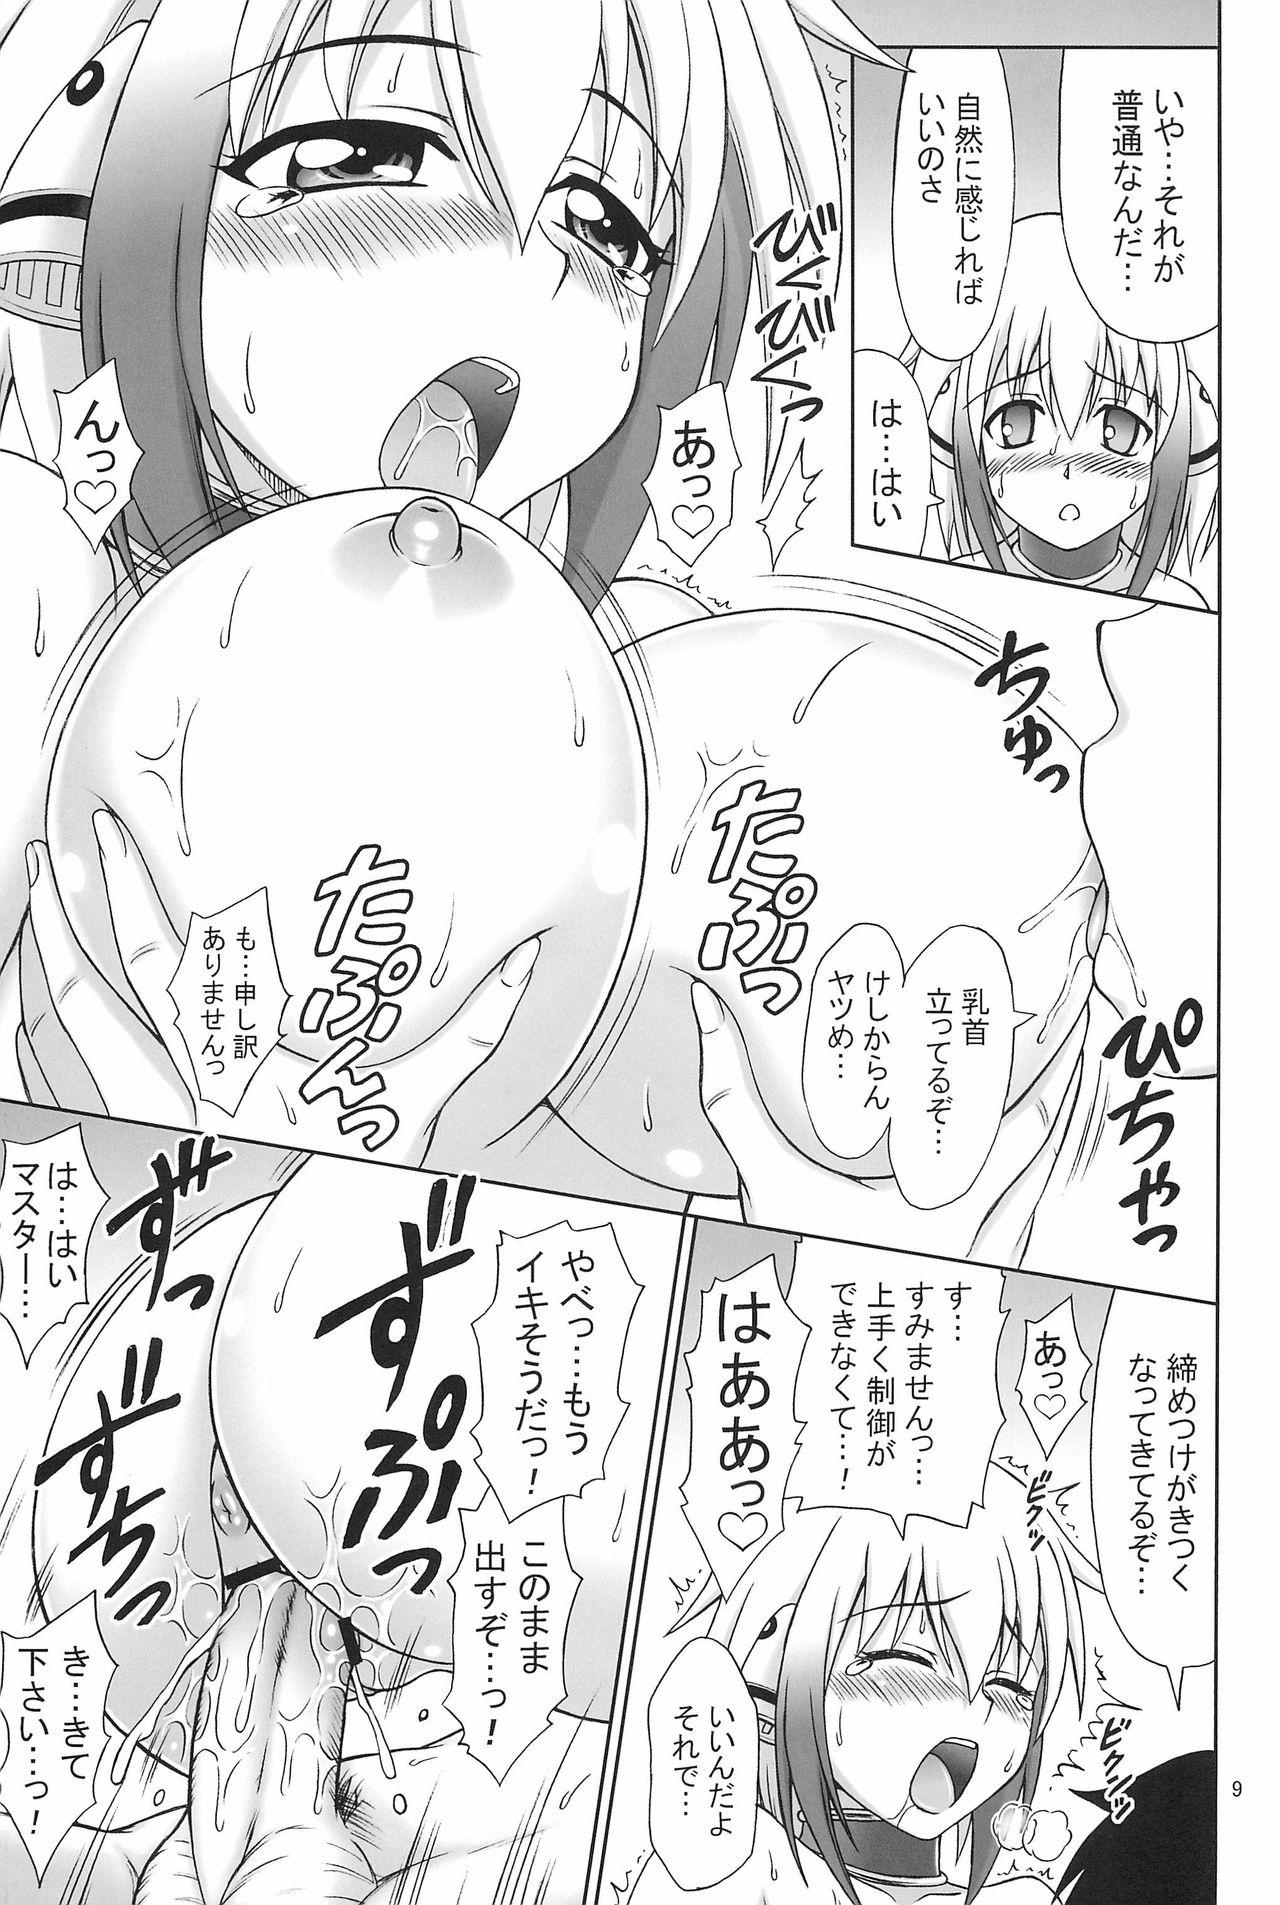 Cream Kyokumen Oppai Double - Sora no otoshimono Lezdom - Page 9